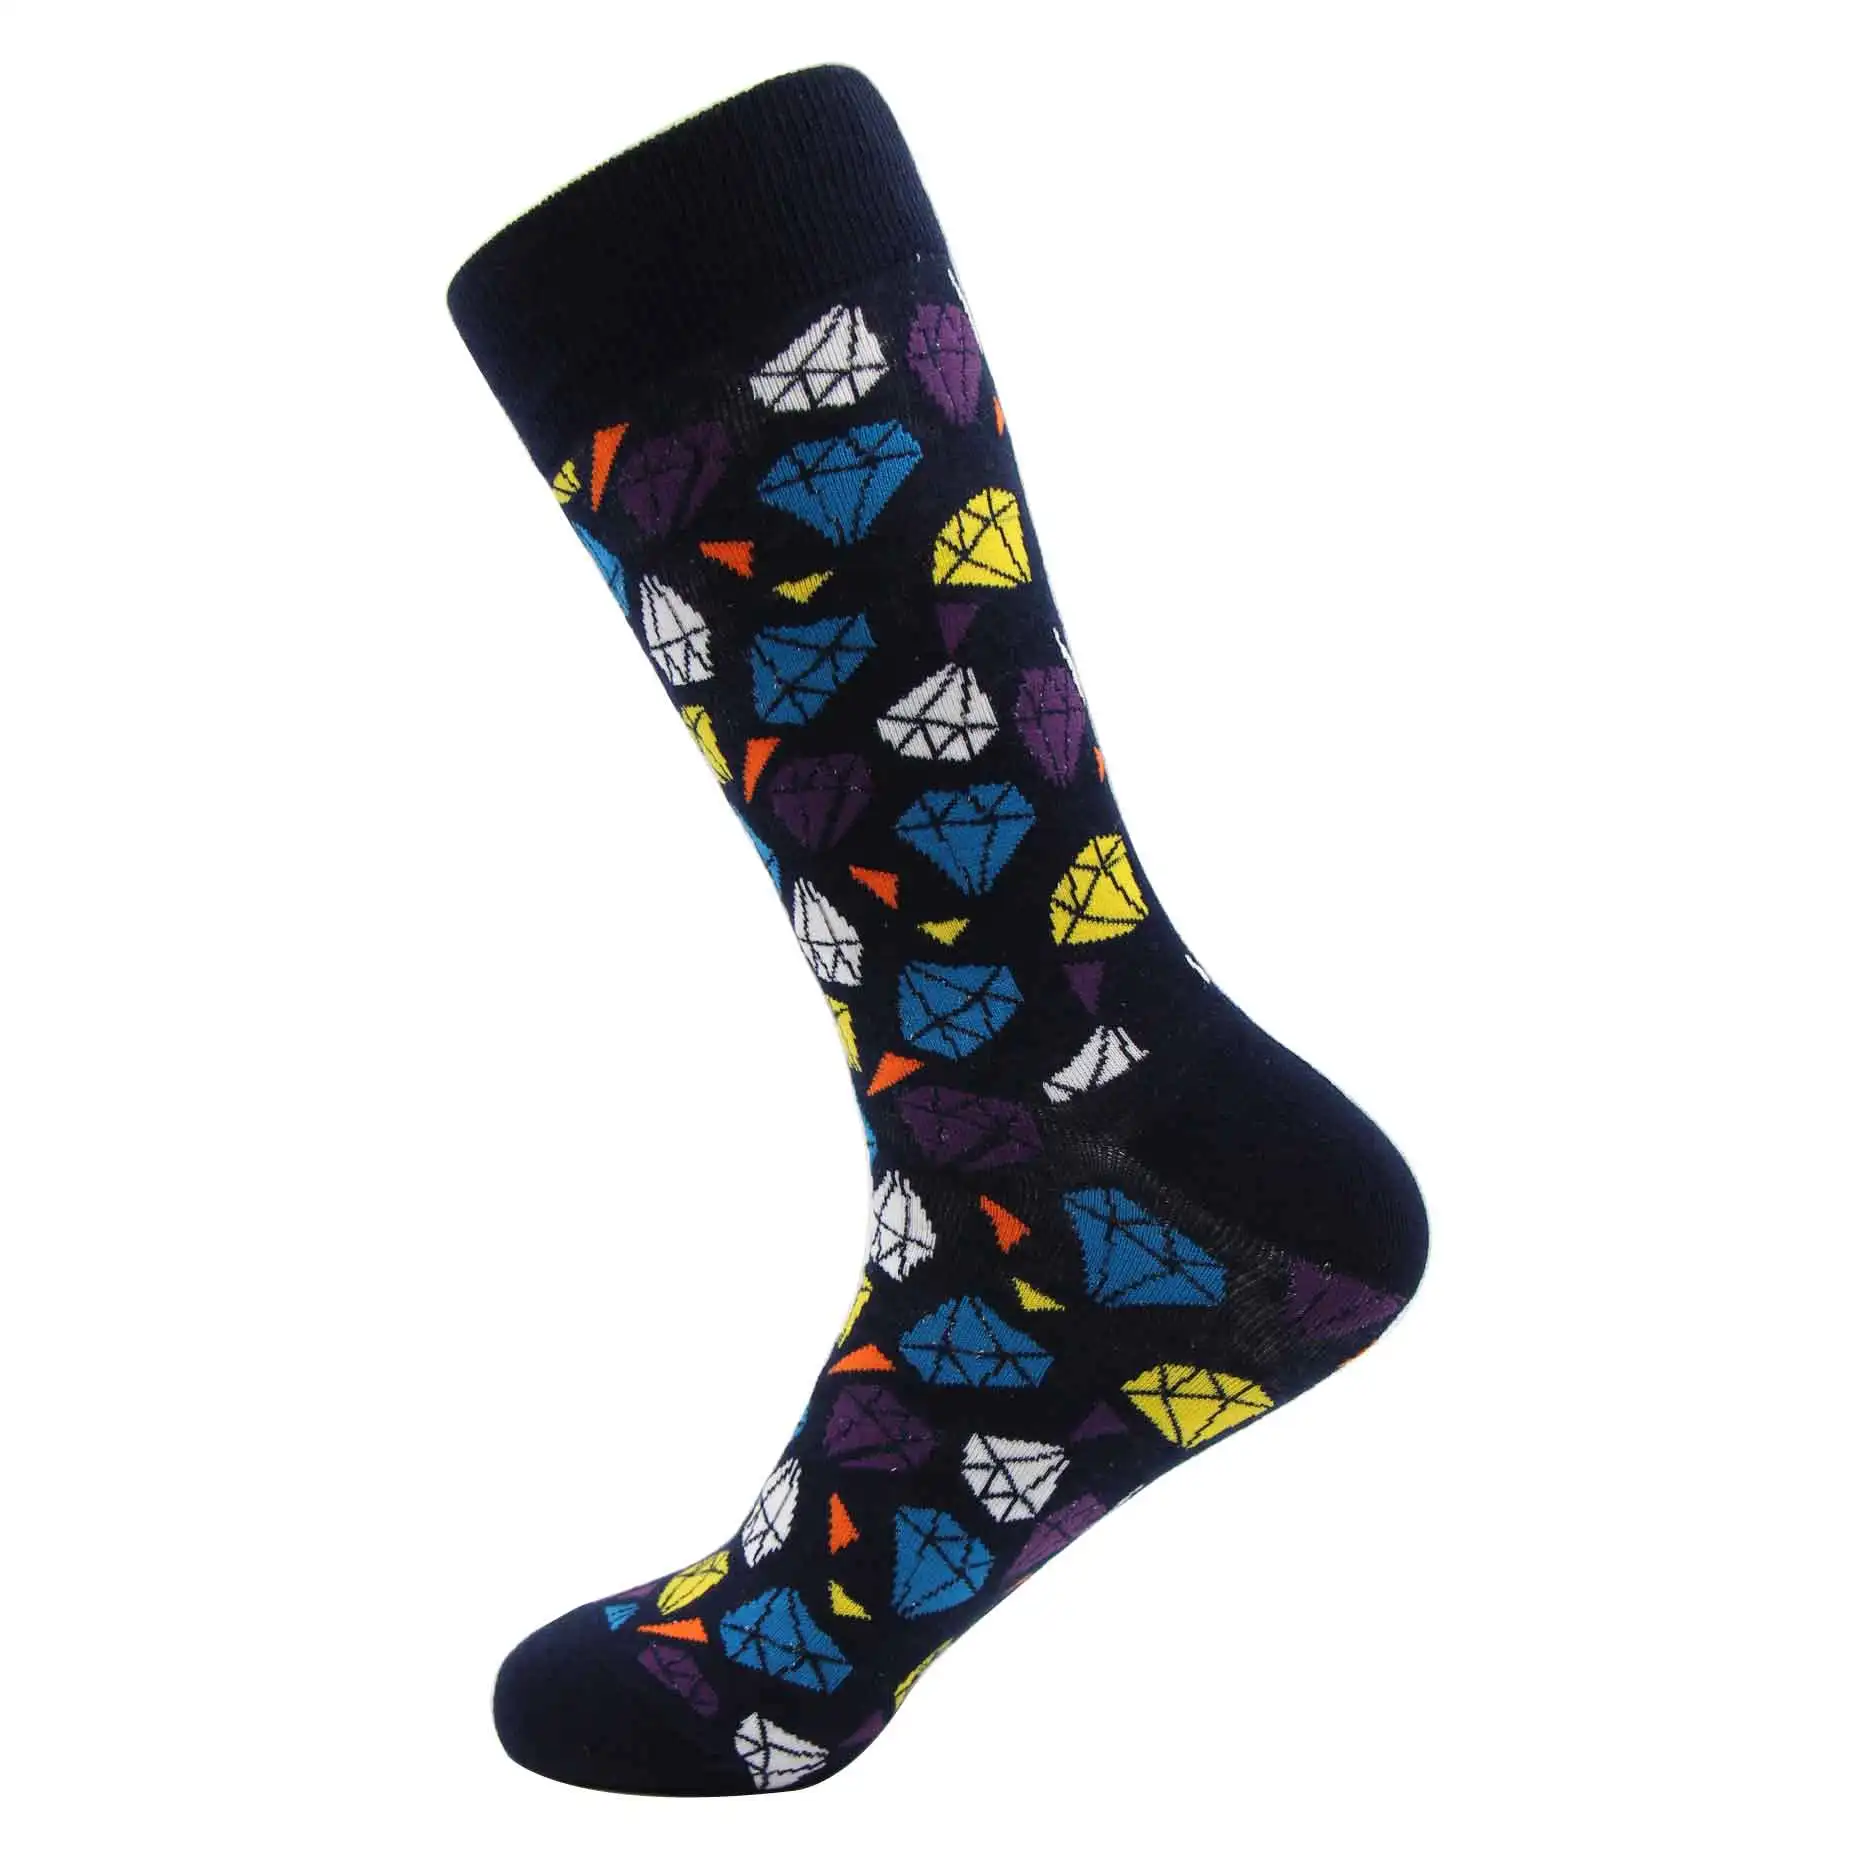 WH SOKKEN забавные мужские новые носки из чесаного хлопка шар с водородом компрессионный хип-хоп Повседневный стиль для новинок подарки 25 цветов - Цвет: SKDI001